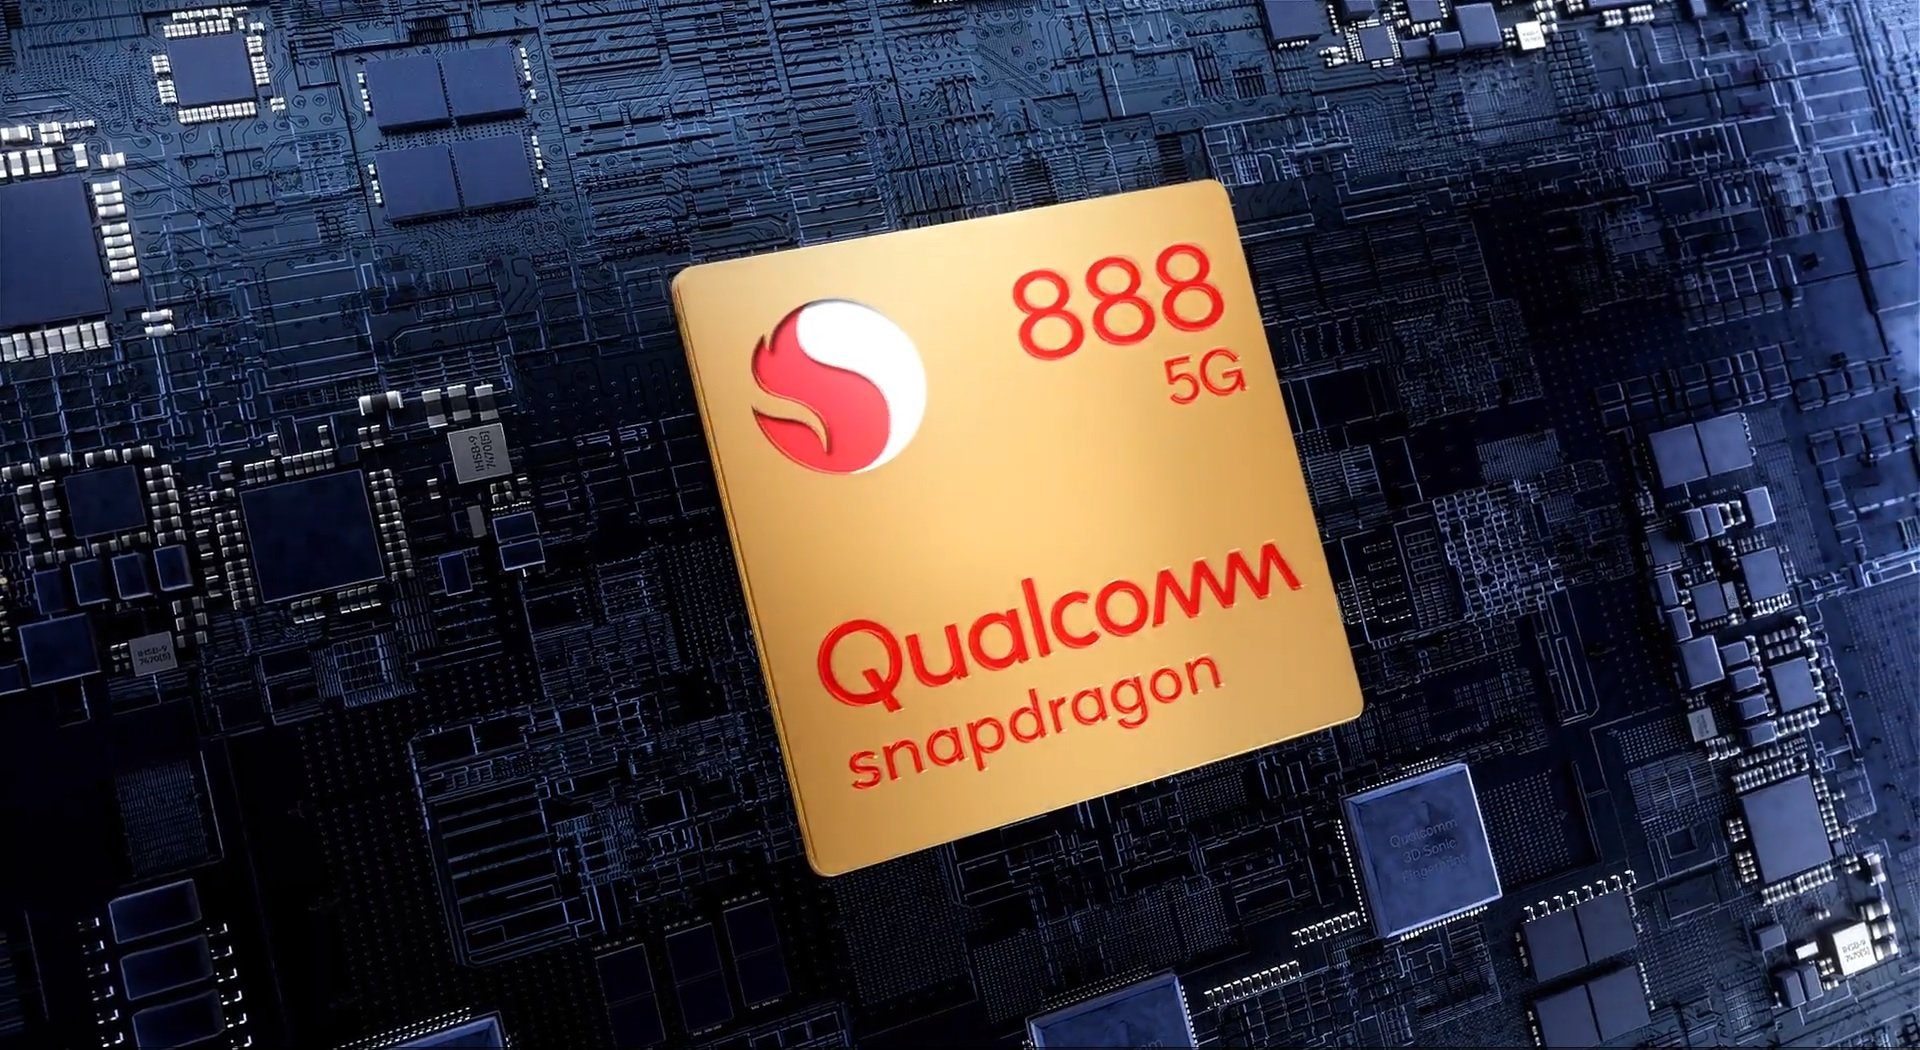 Wann das zweite Smartphone mit dem Snapdragon 888 Prozessor auf den Markt kommt, ist bereits bekannt 253